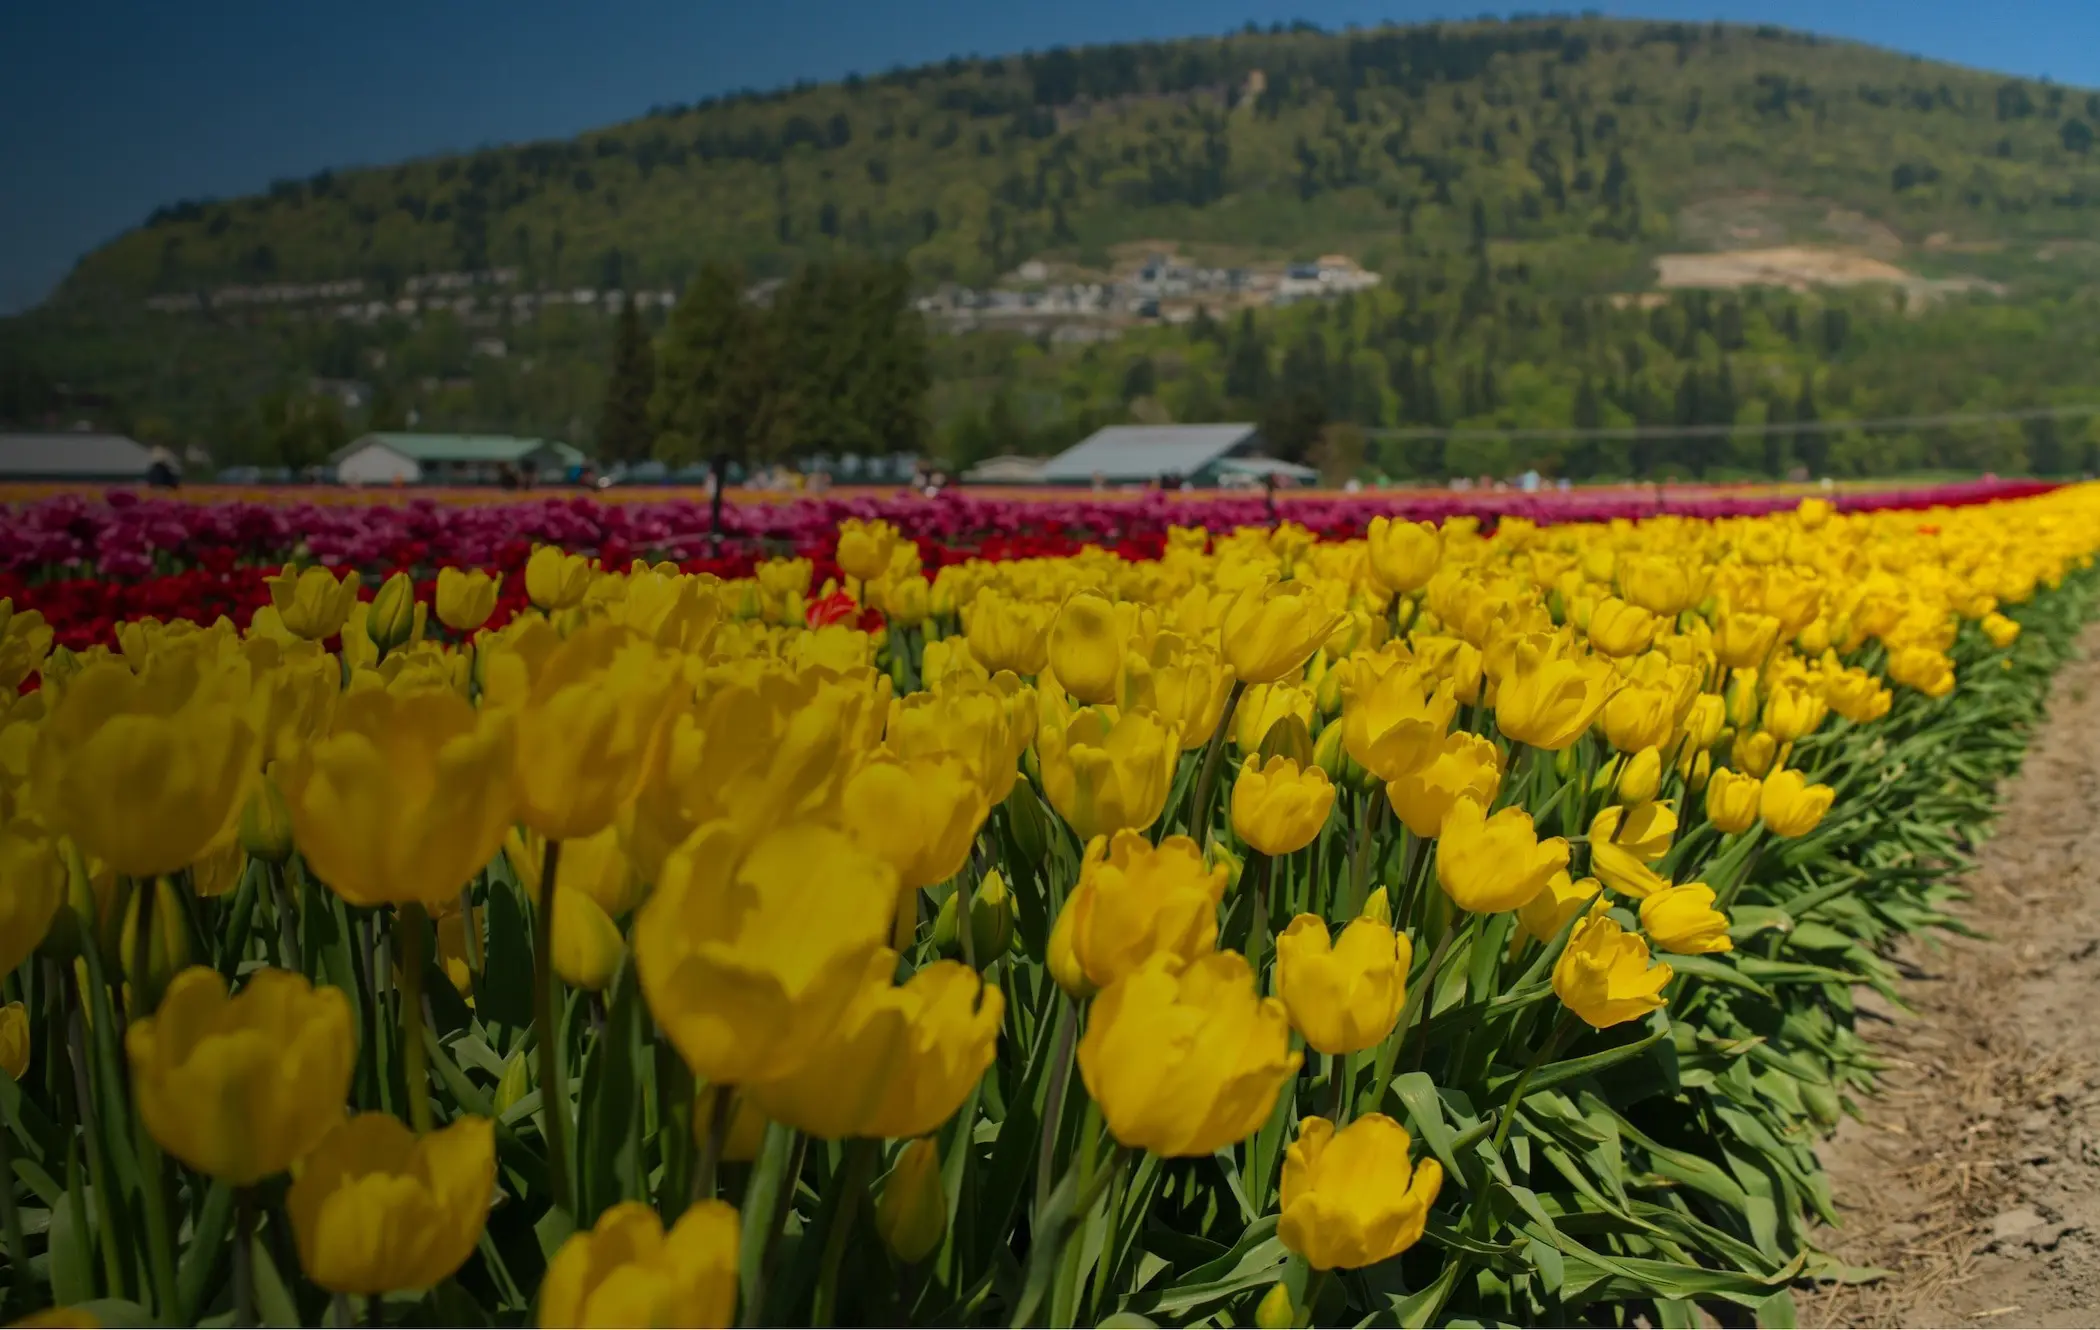 Tulip field in Abbotsford, BC